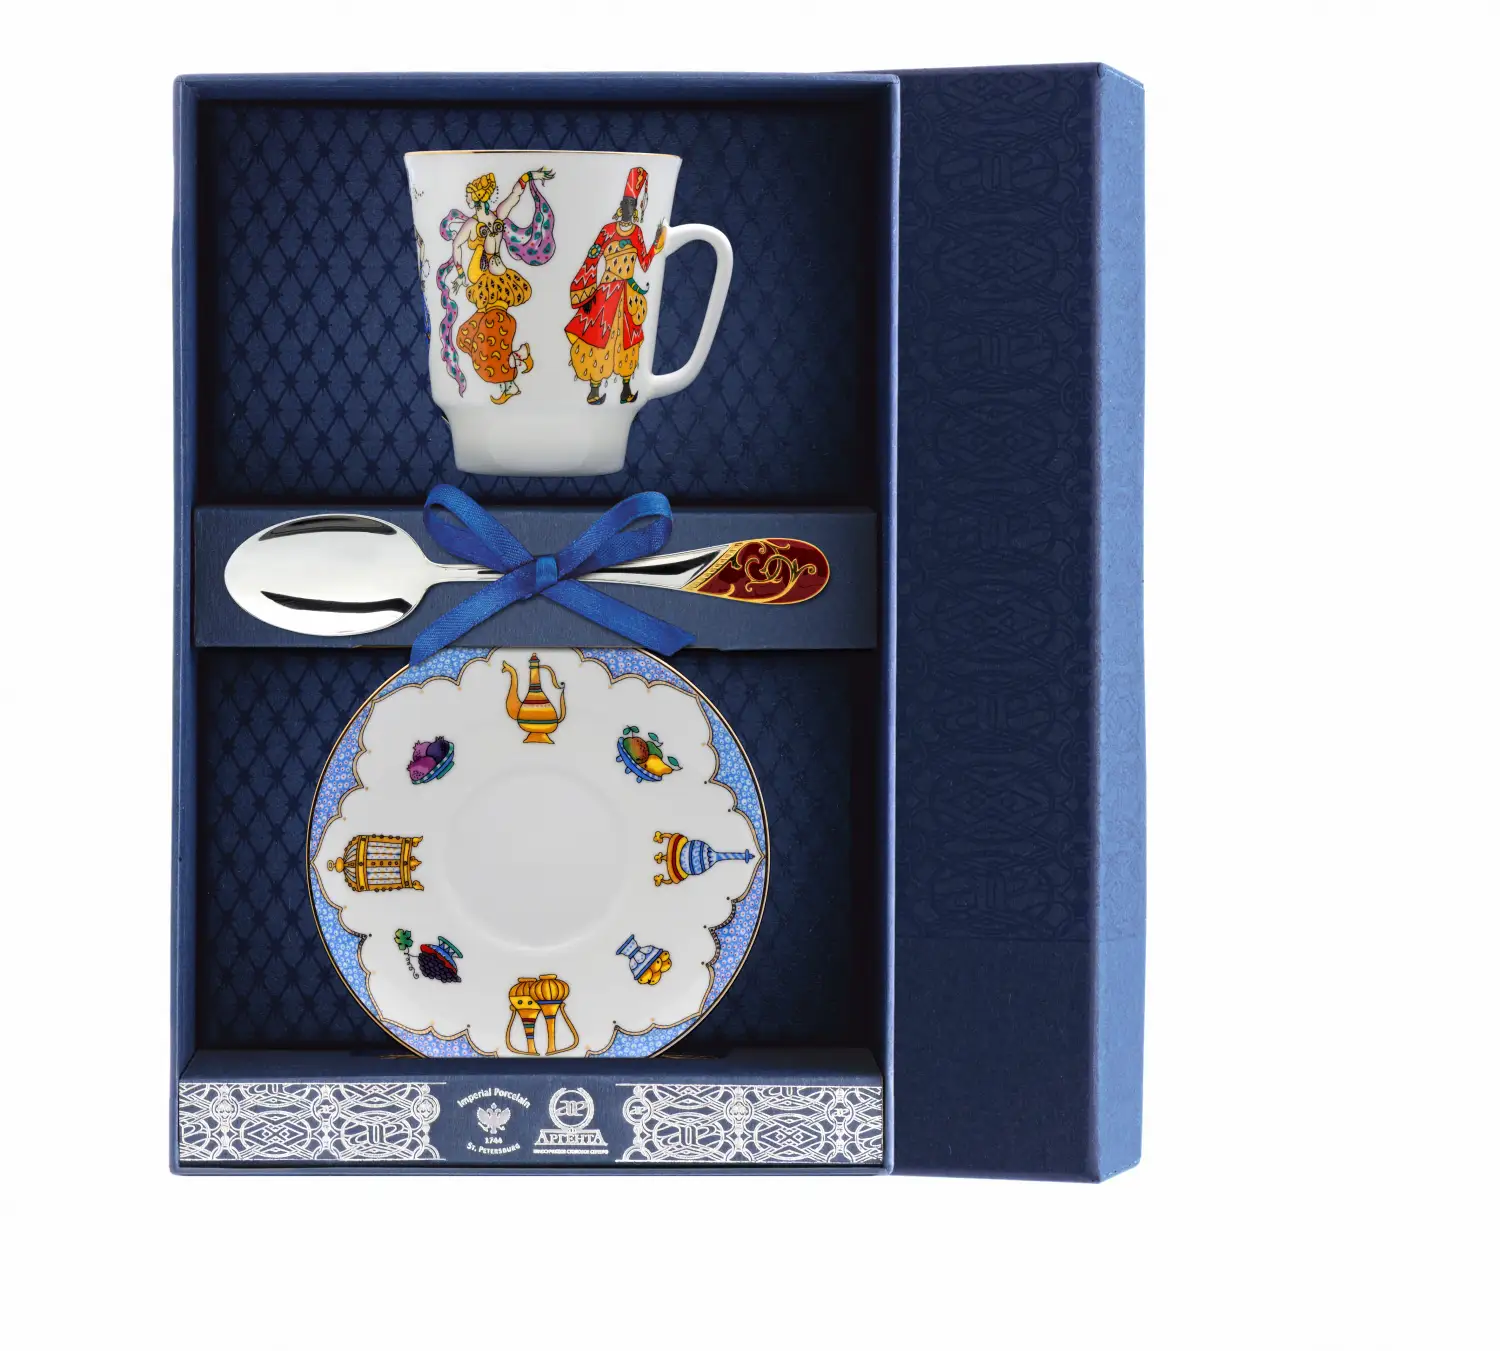 Набор чайный Майская - Балет Шахерезада: блюдце, ложка, чашка (Серебро 925) набор чайный майская балет лебединое озеро ложка рамка для фото чашка серебро 925